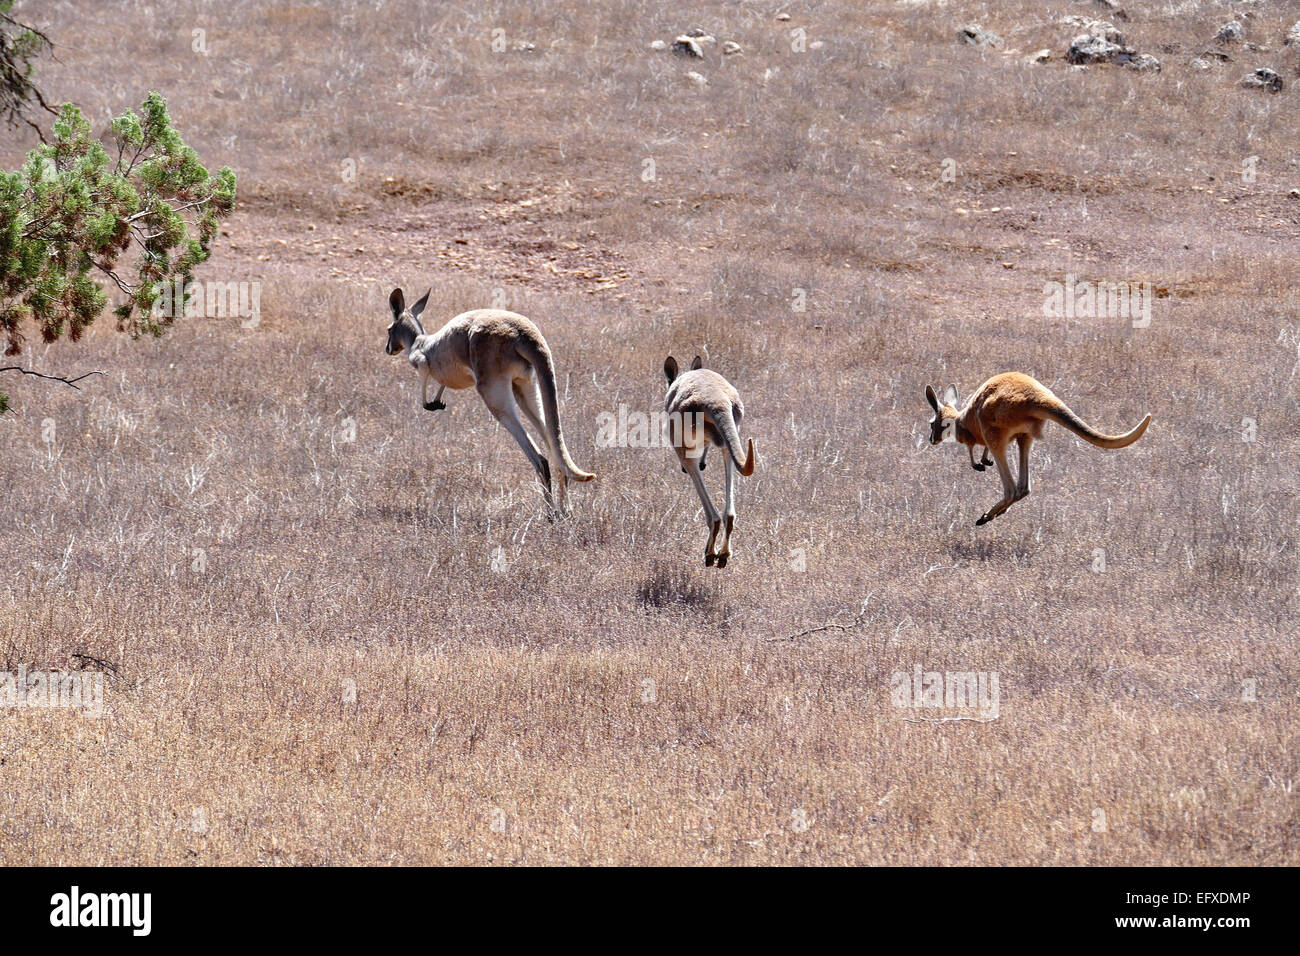 Kangaroos on the run Stock Photo